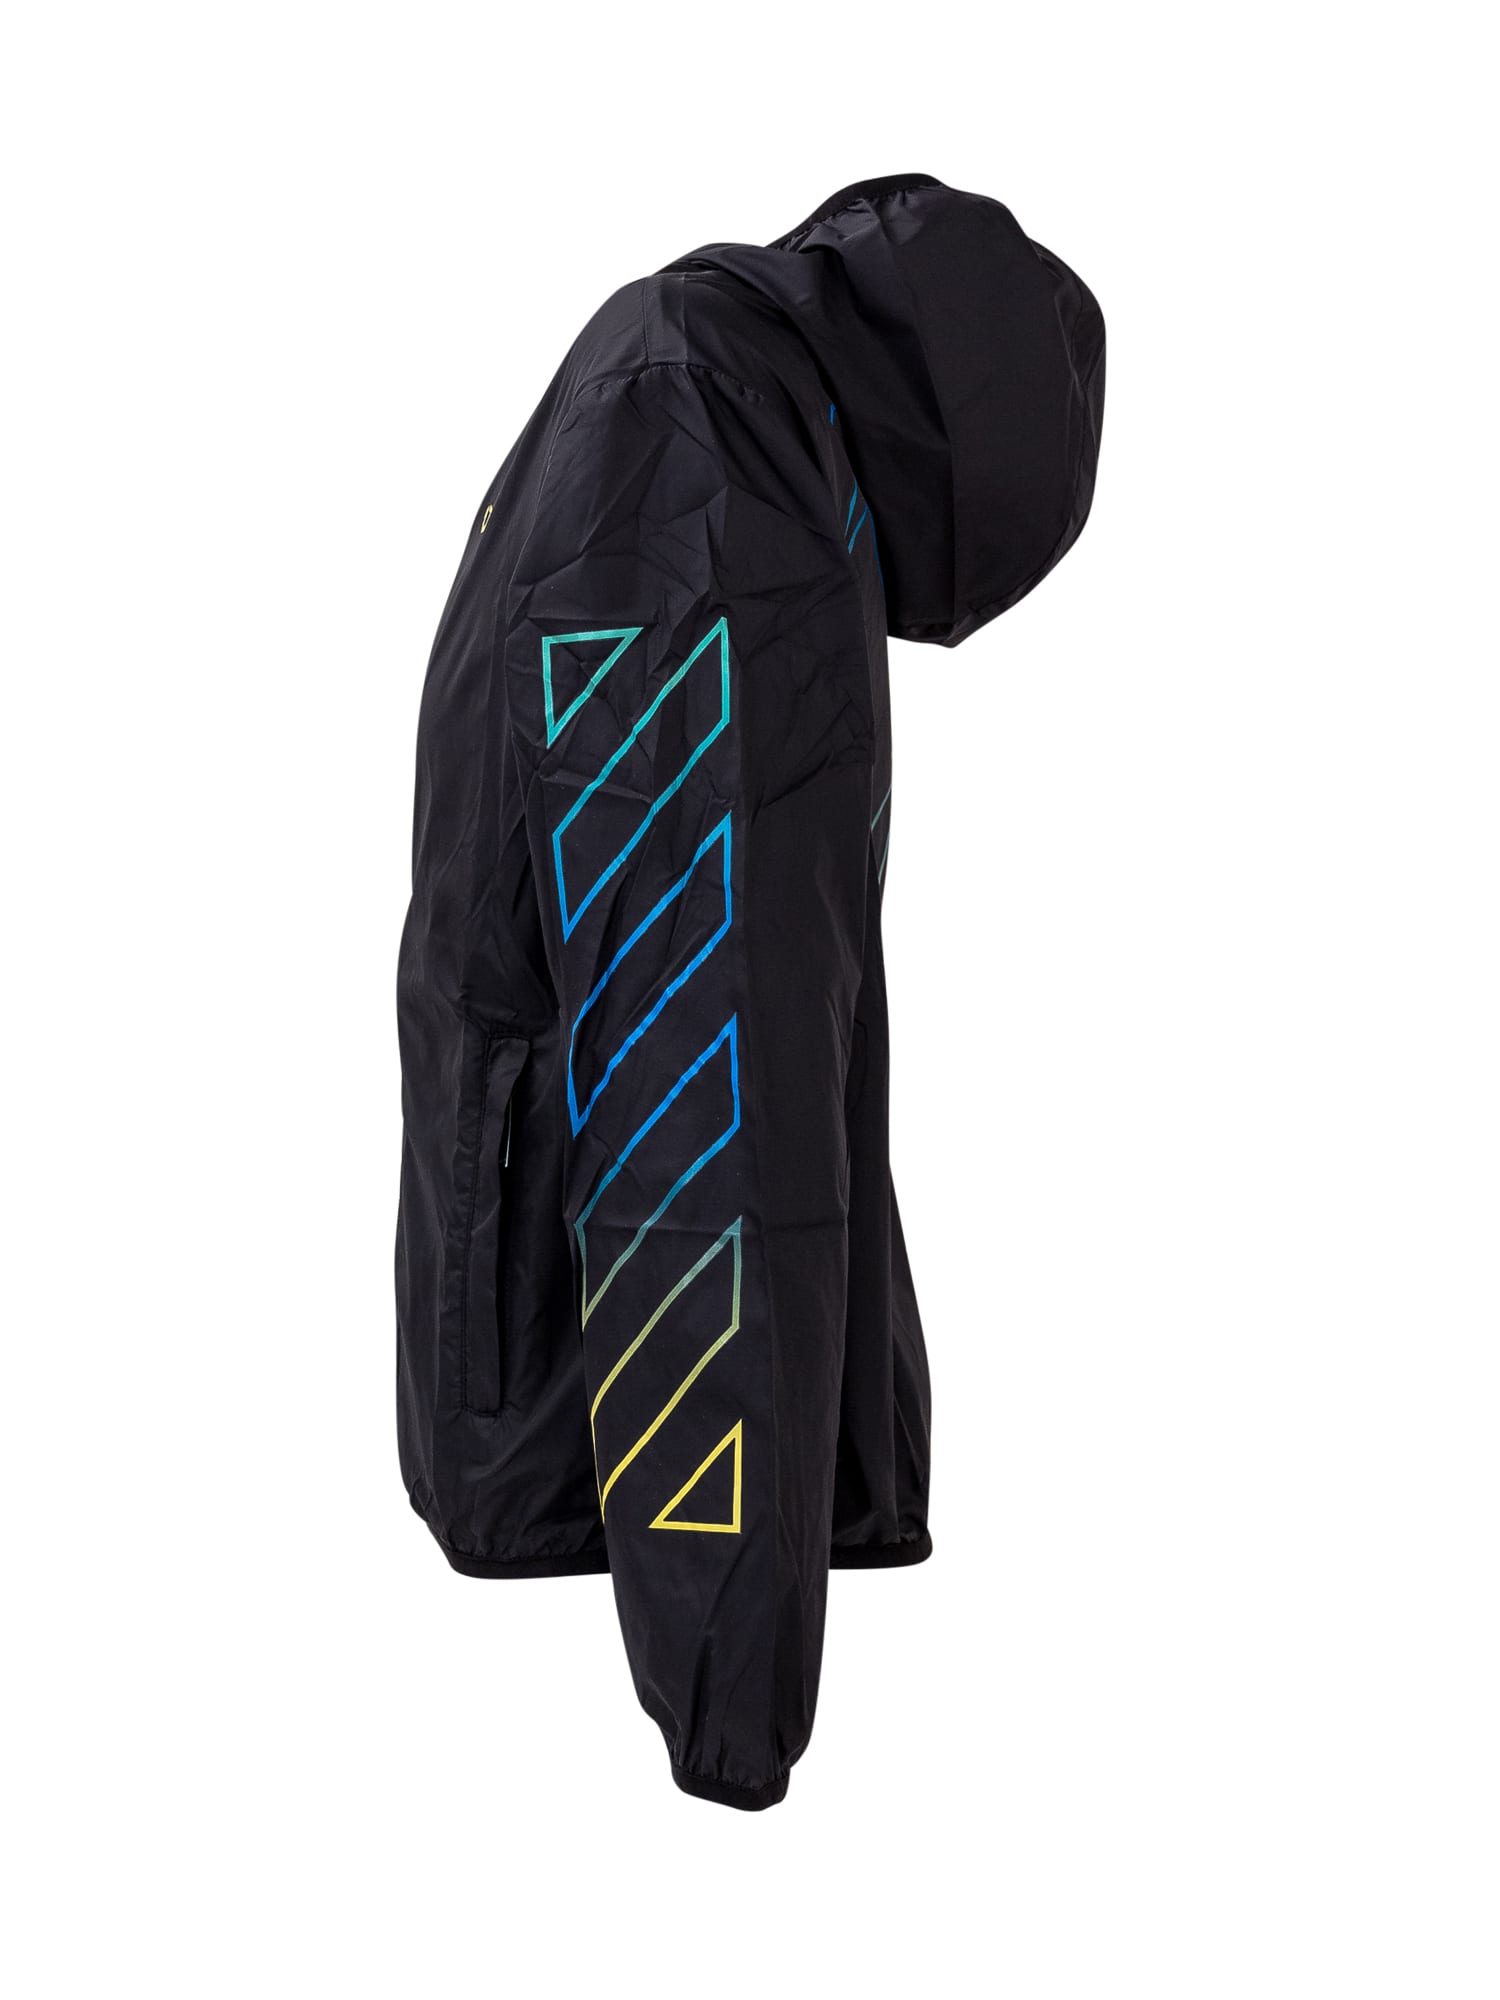 Shop Off-white Arrow Rainbow Jacket In Black Multicolor